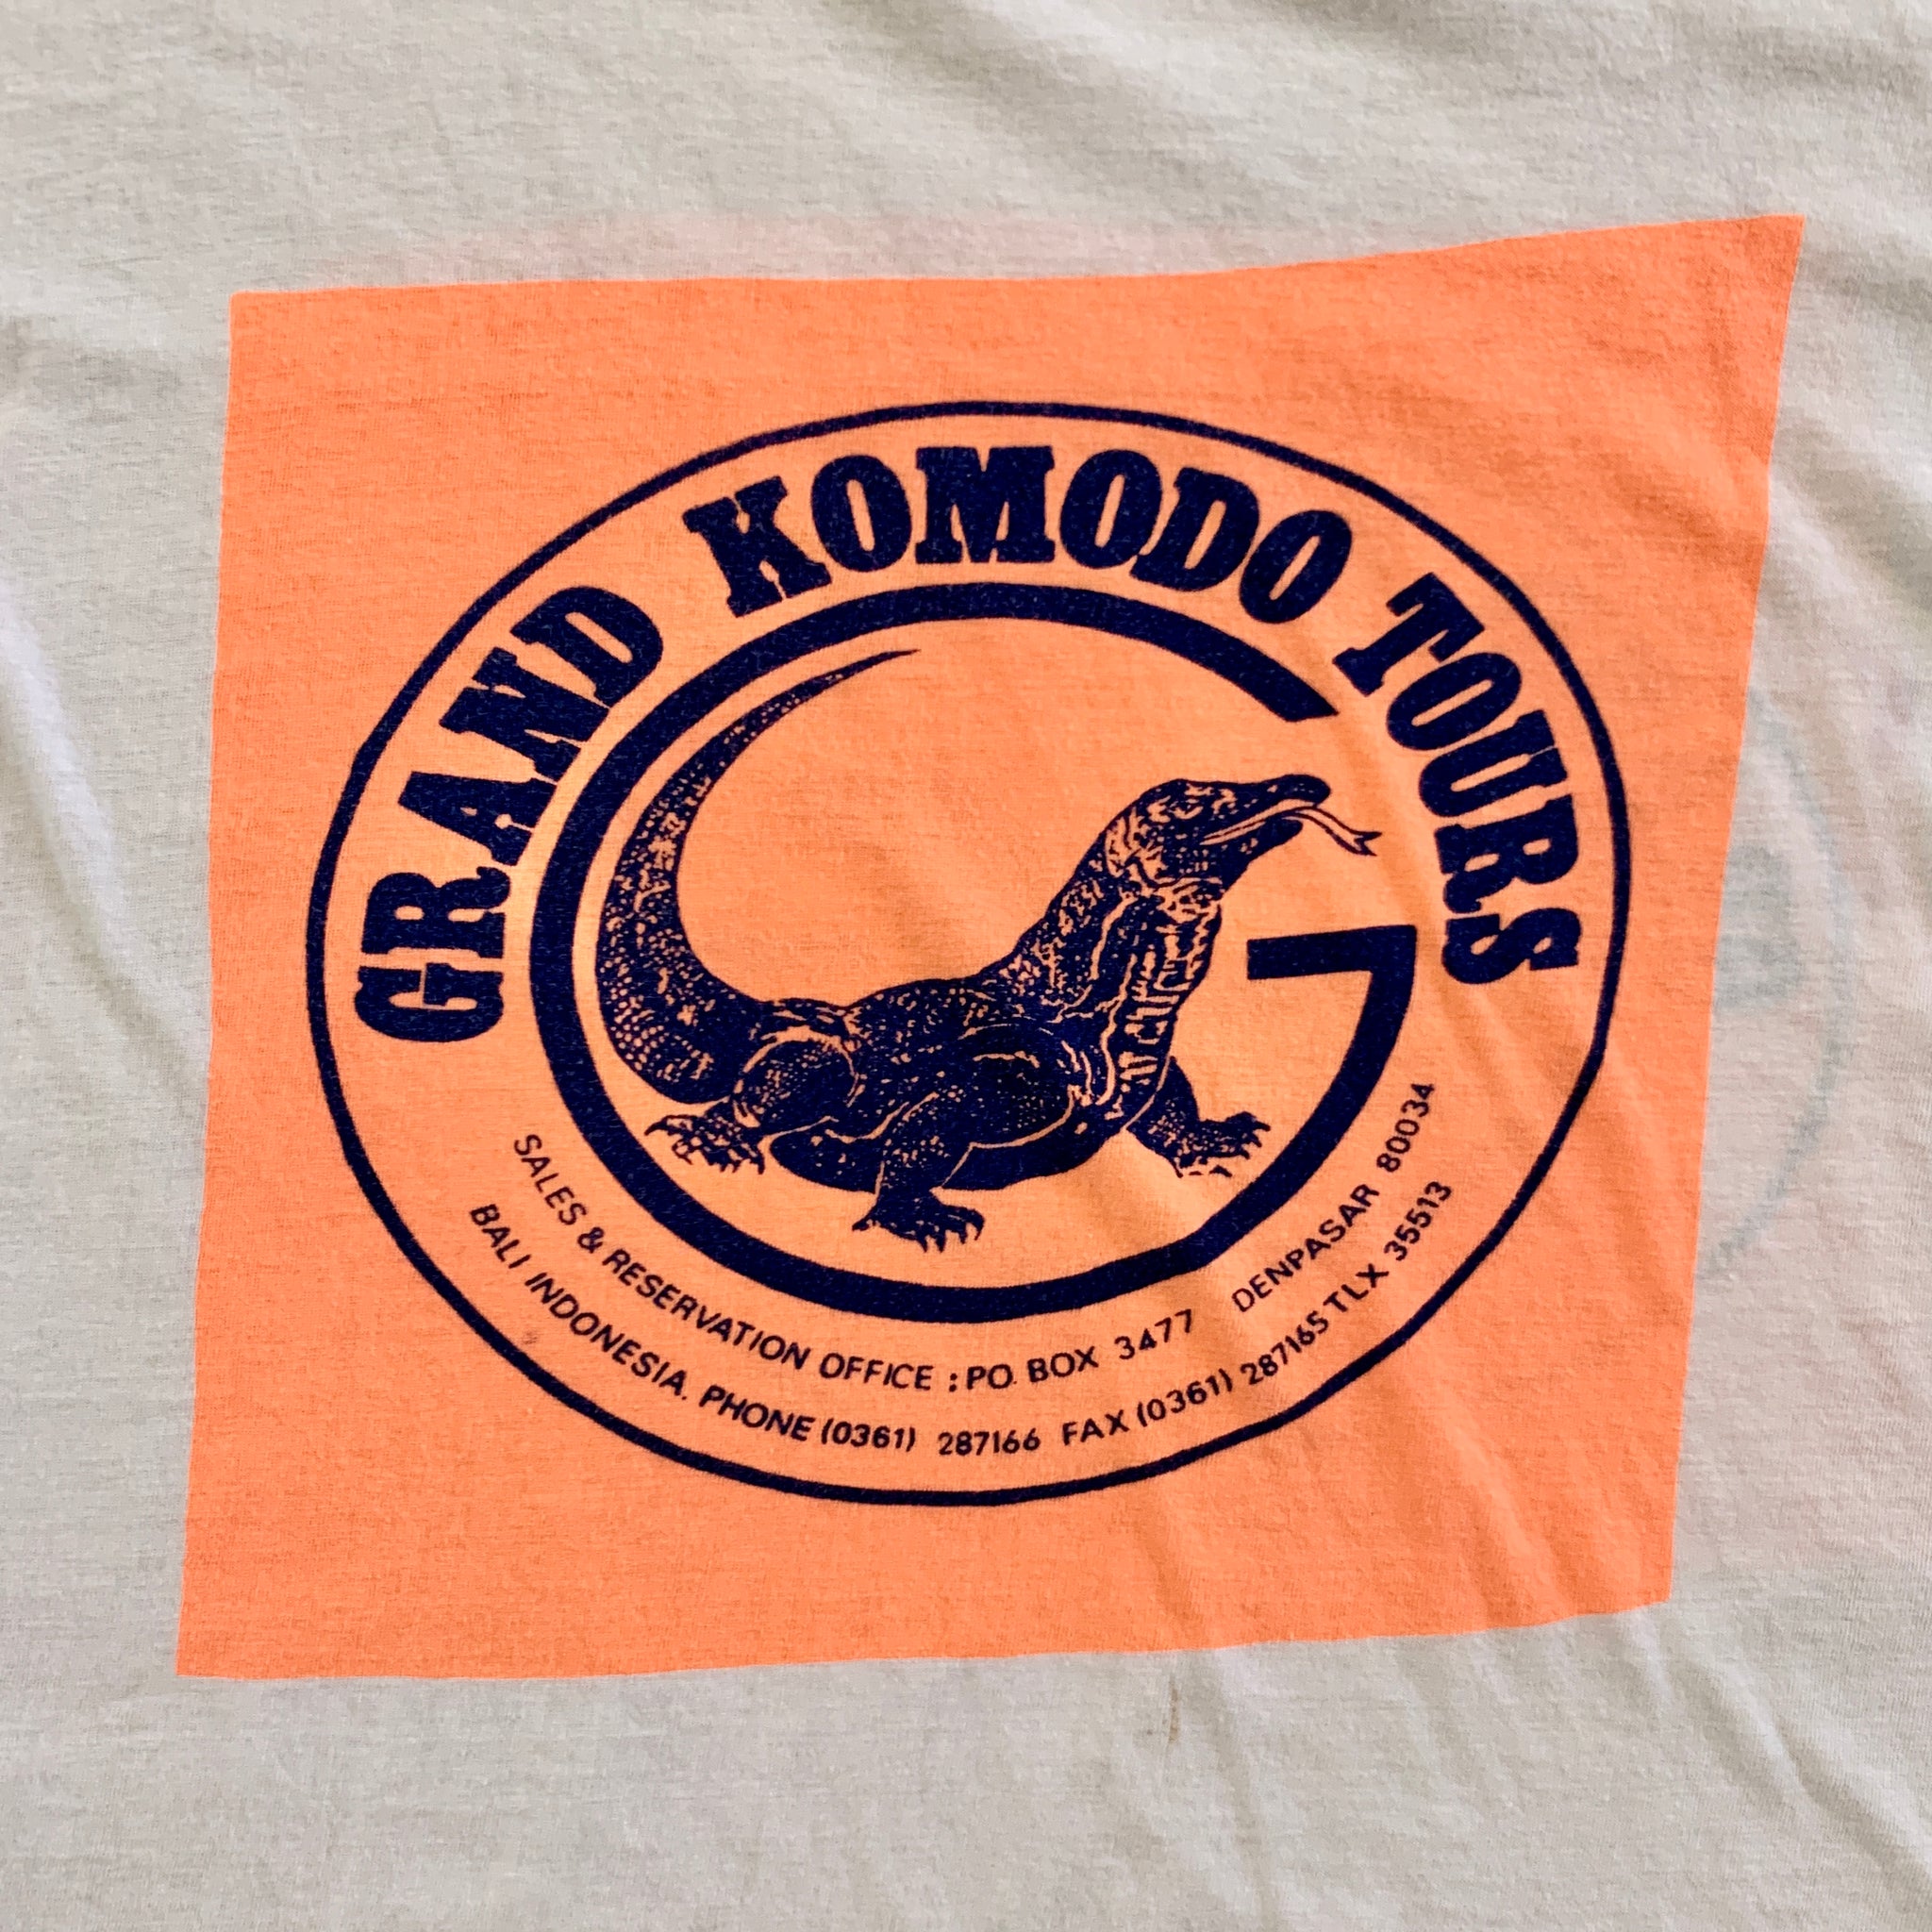 Grand Komodo Tours Tee - Vintage